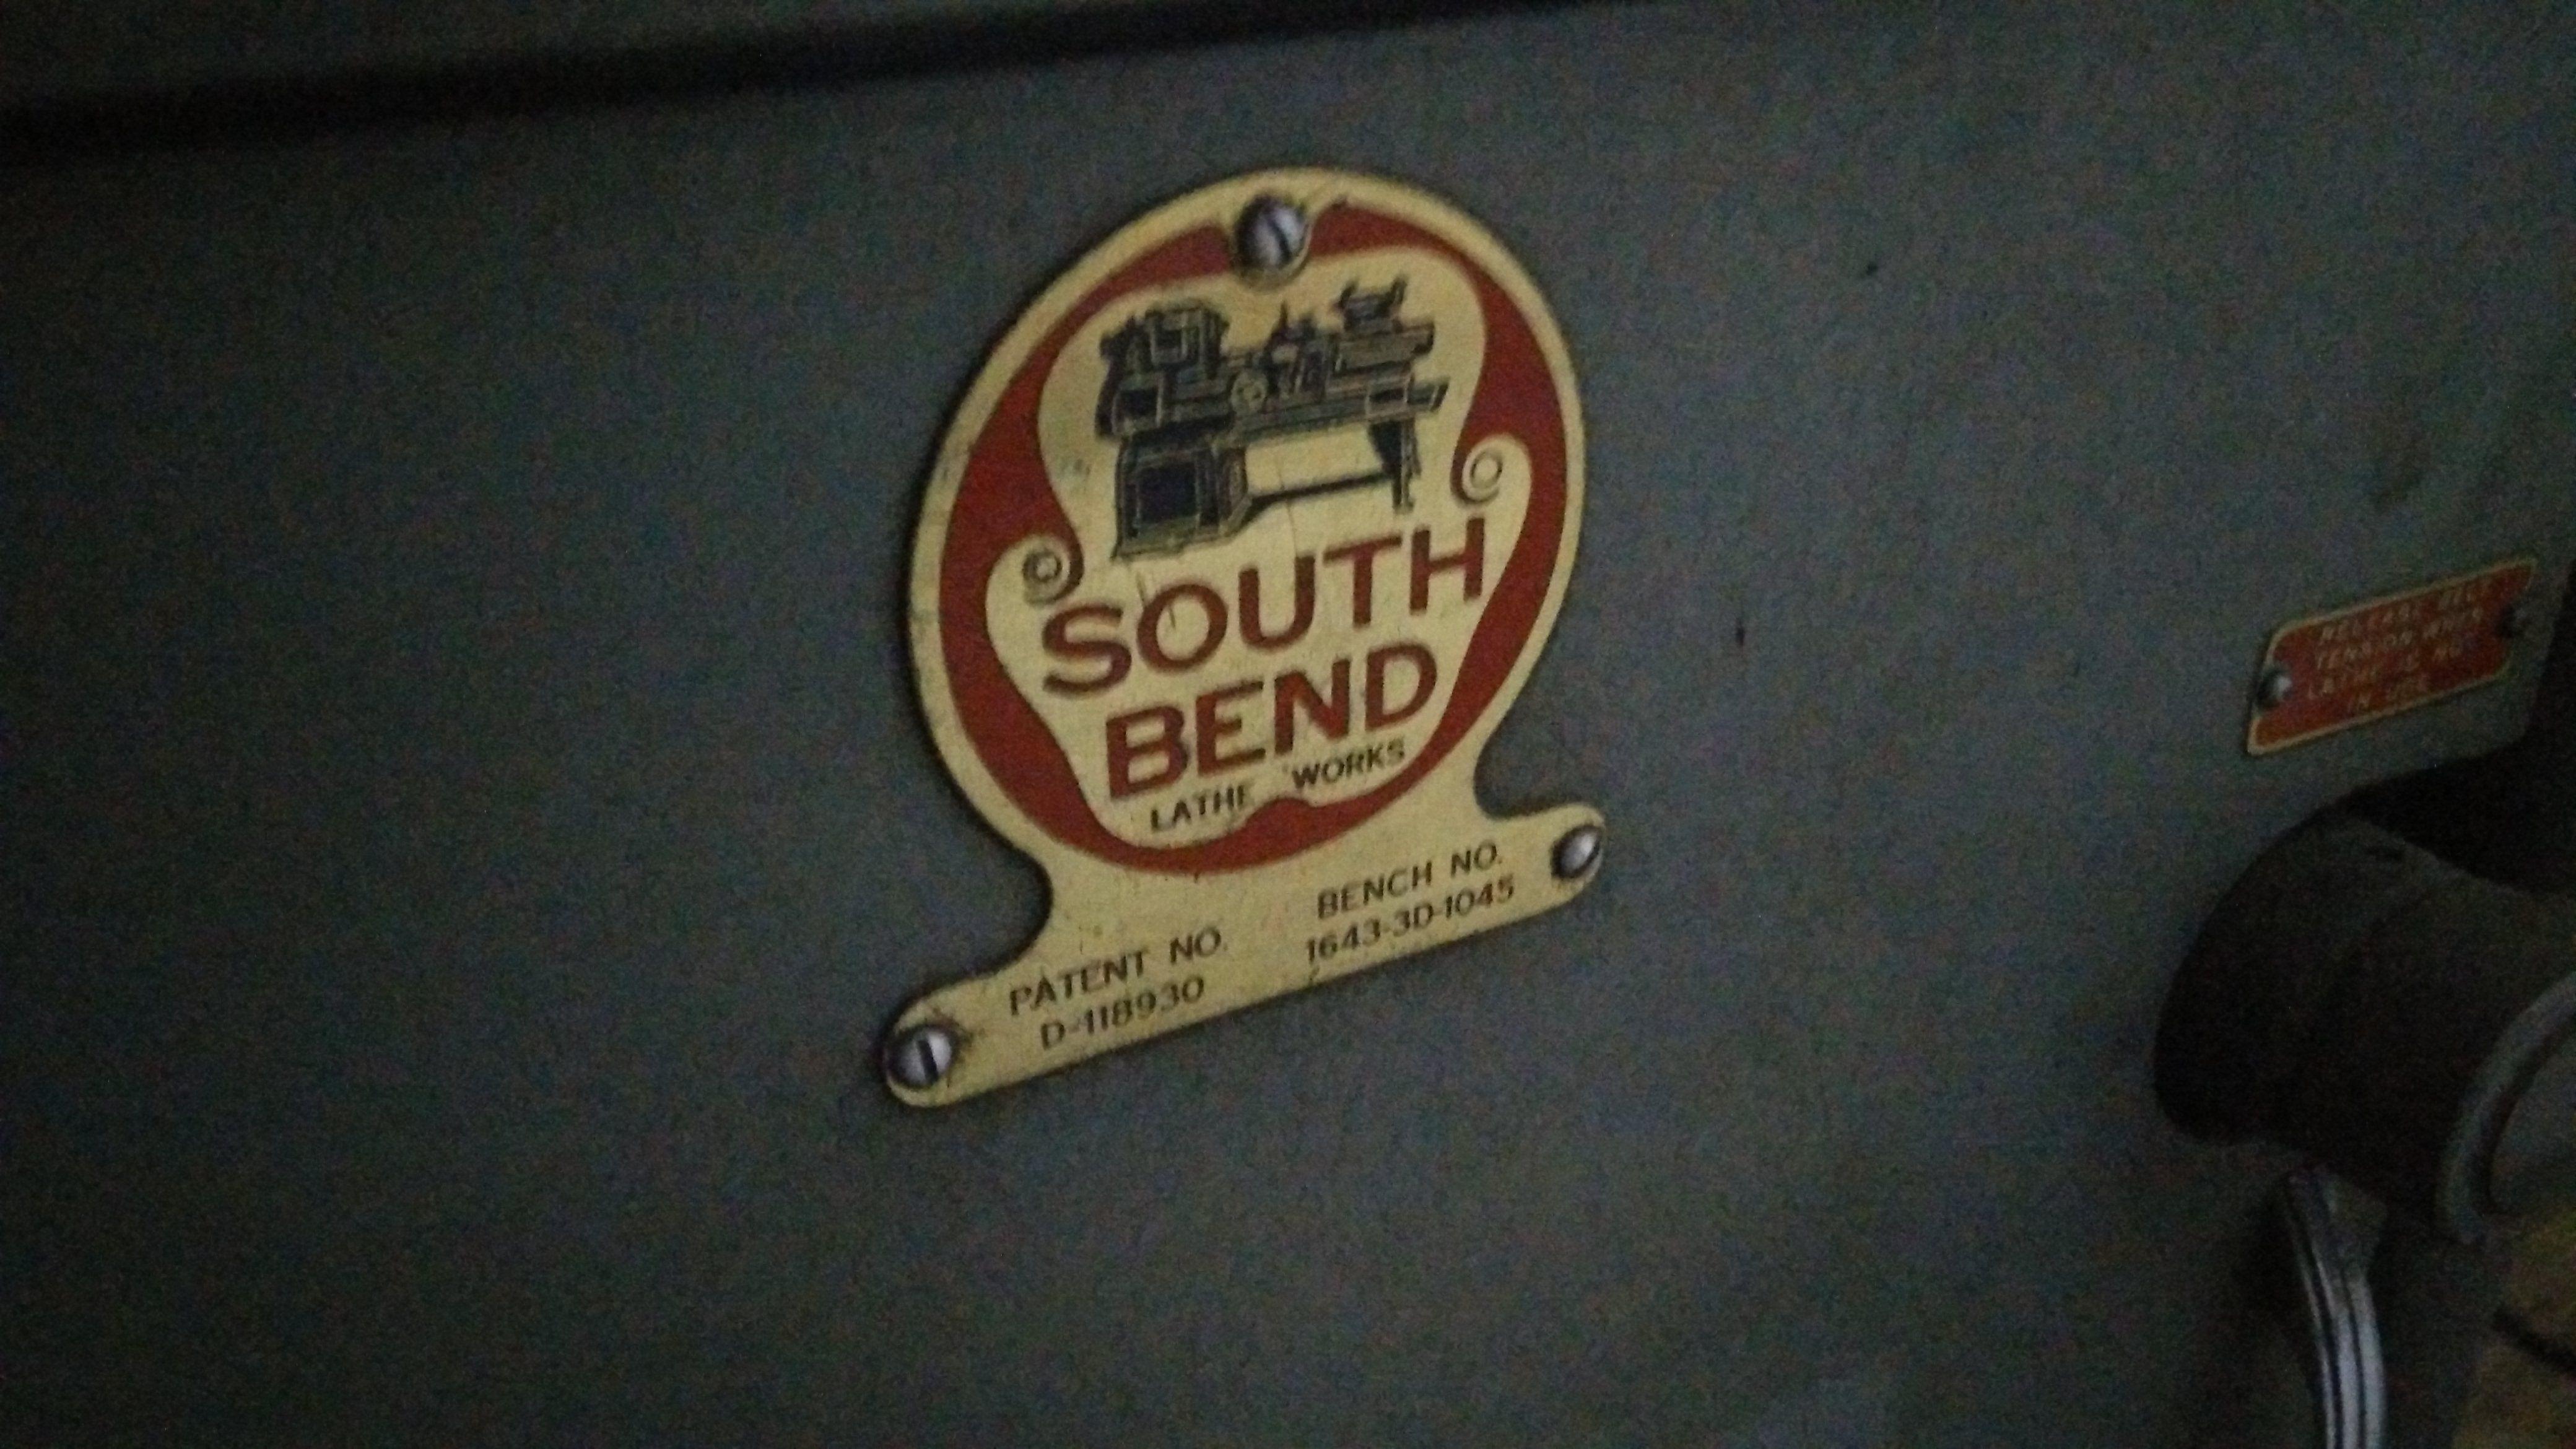 Lathe Logo - Logo of South Bend Lathe Works